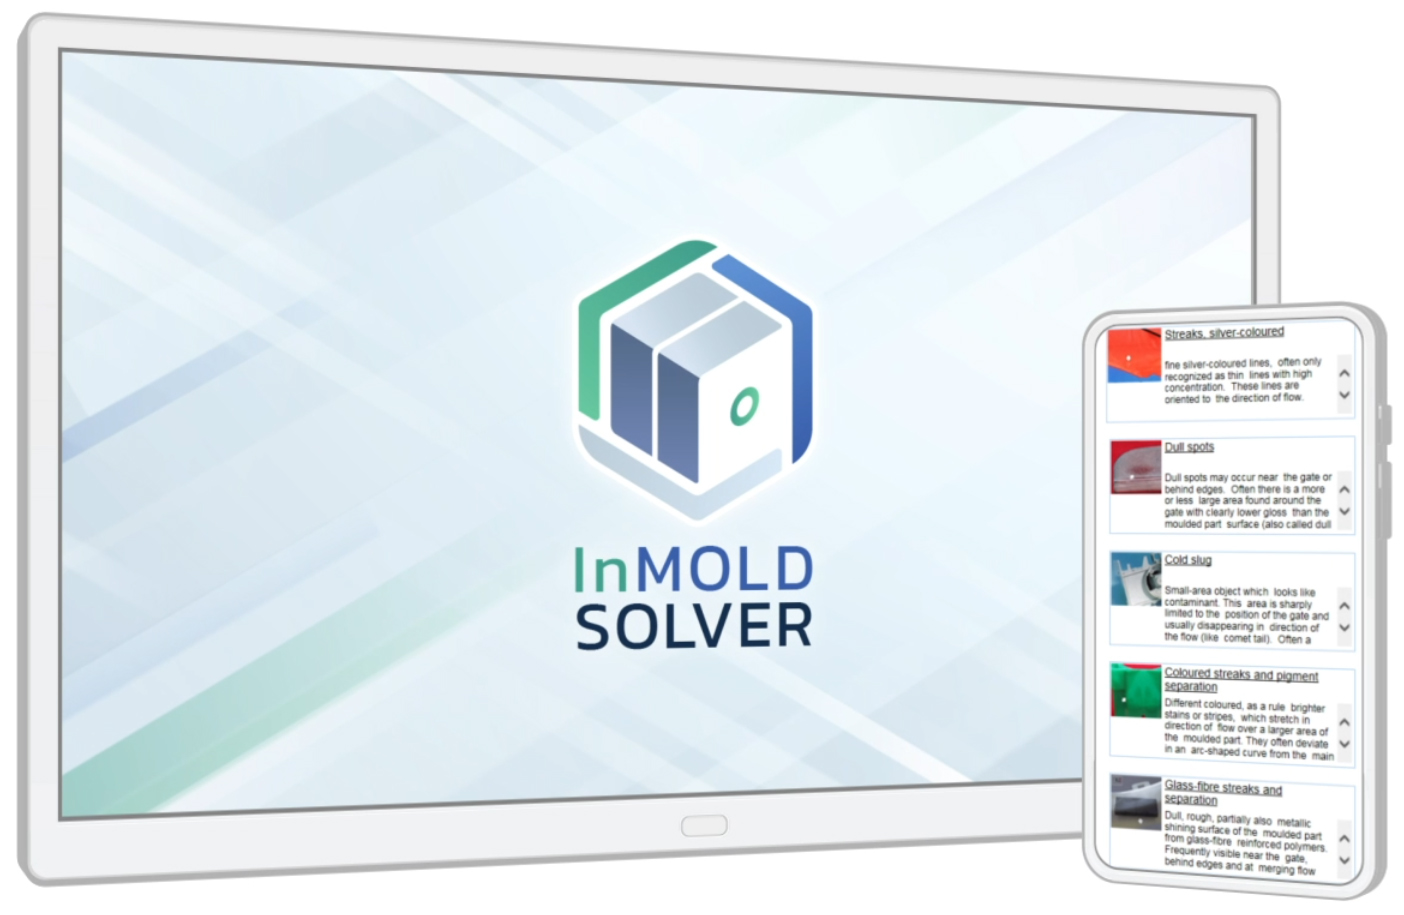 InMold Solver ในอุตสาหกรรมพลาสติก